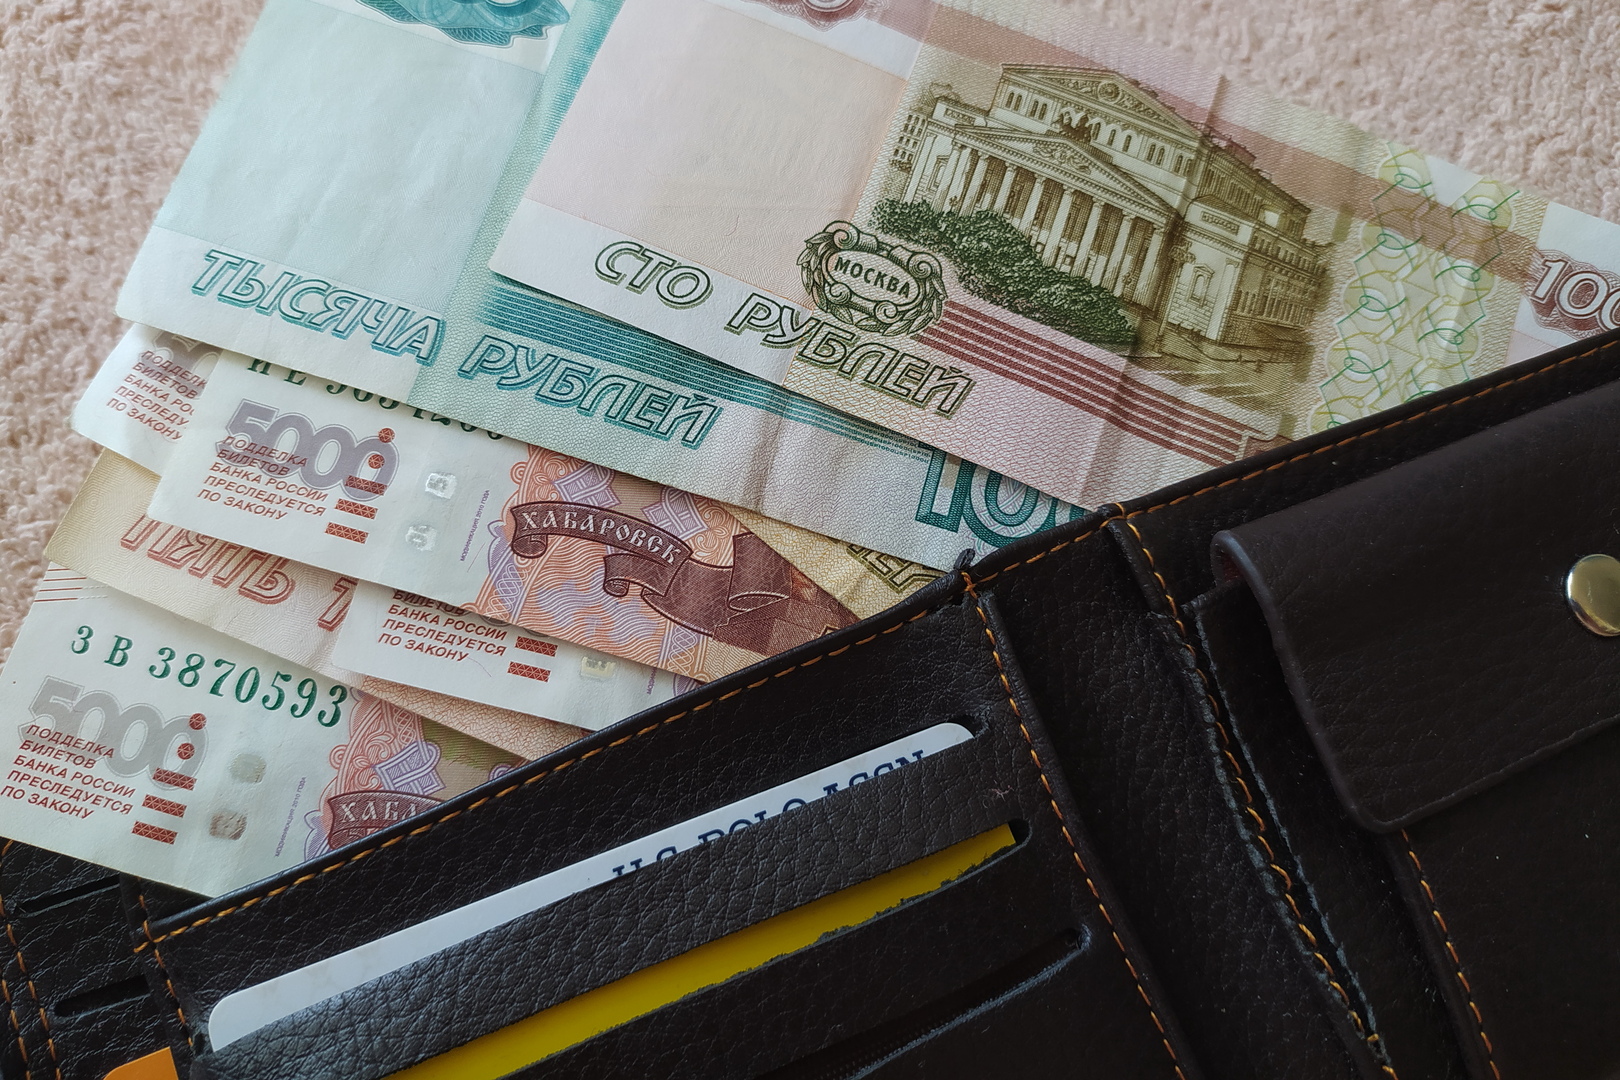 المركزي الروسي يمدد الضوابط على ودائع الدولار